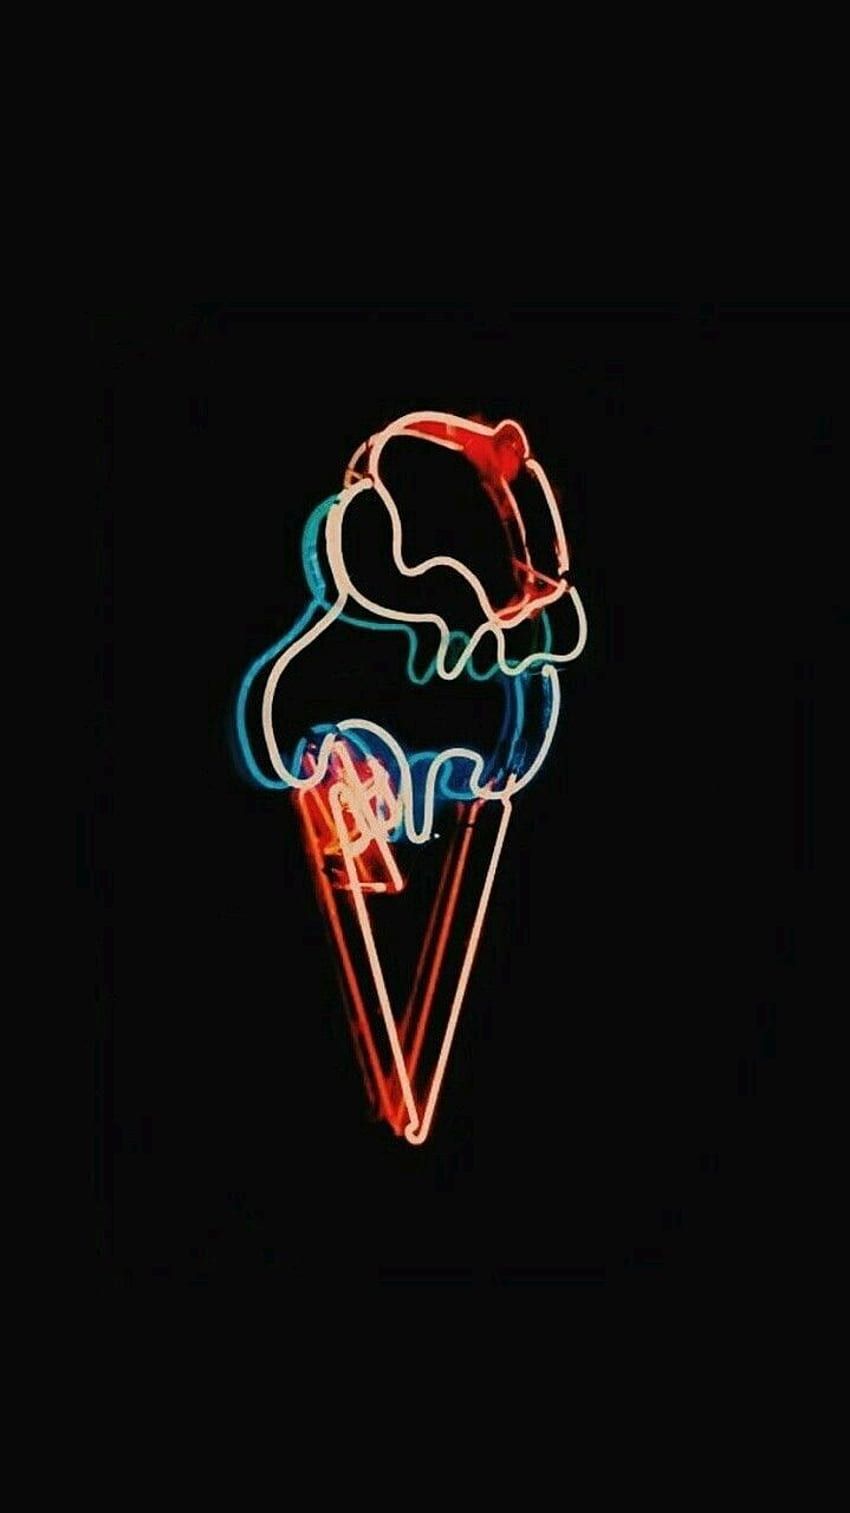 A neon ice cream cone in the dark - Modern, ice cream